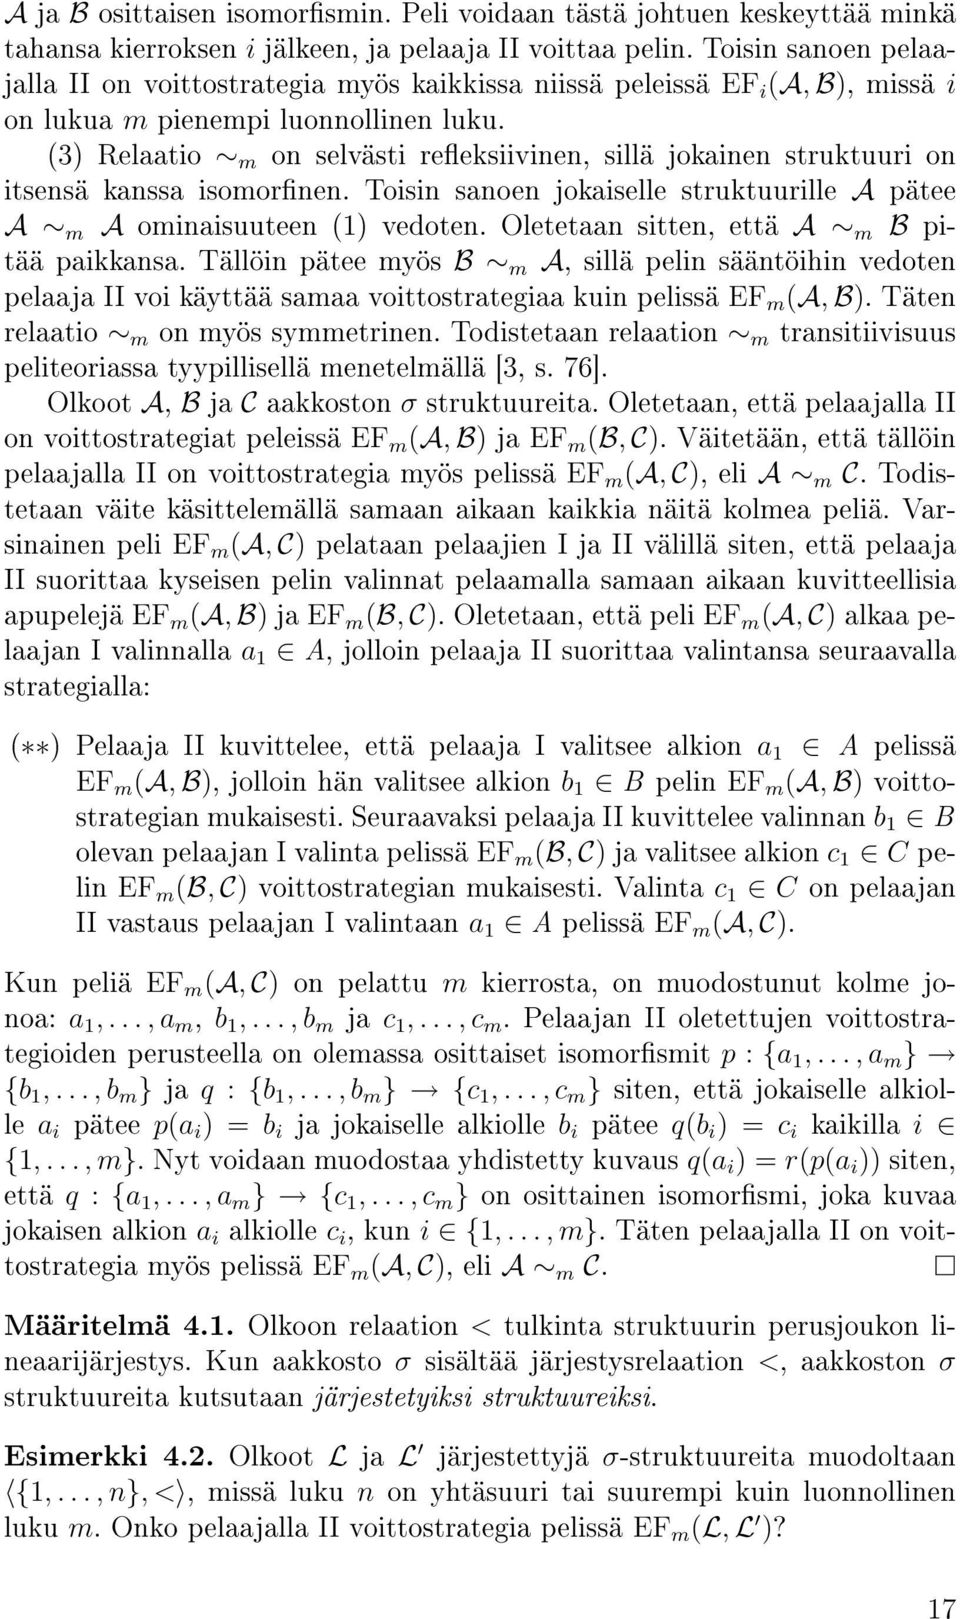 (3) Relaatio m on selvästi reeksiivinen, sillä jokainen struktuuri on itsensä kanssa isomornen. Toisin sanoen jokaiselle struktuurille A pätee A m A ominaisuuteen (1) vedoten.